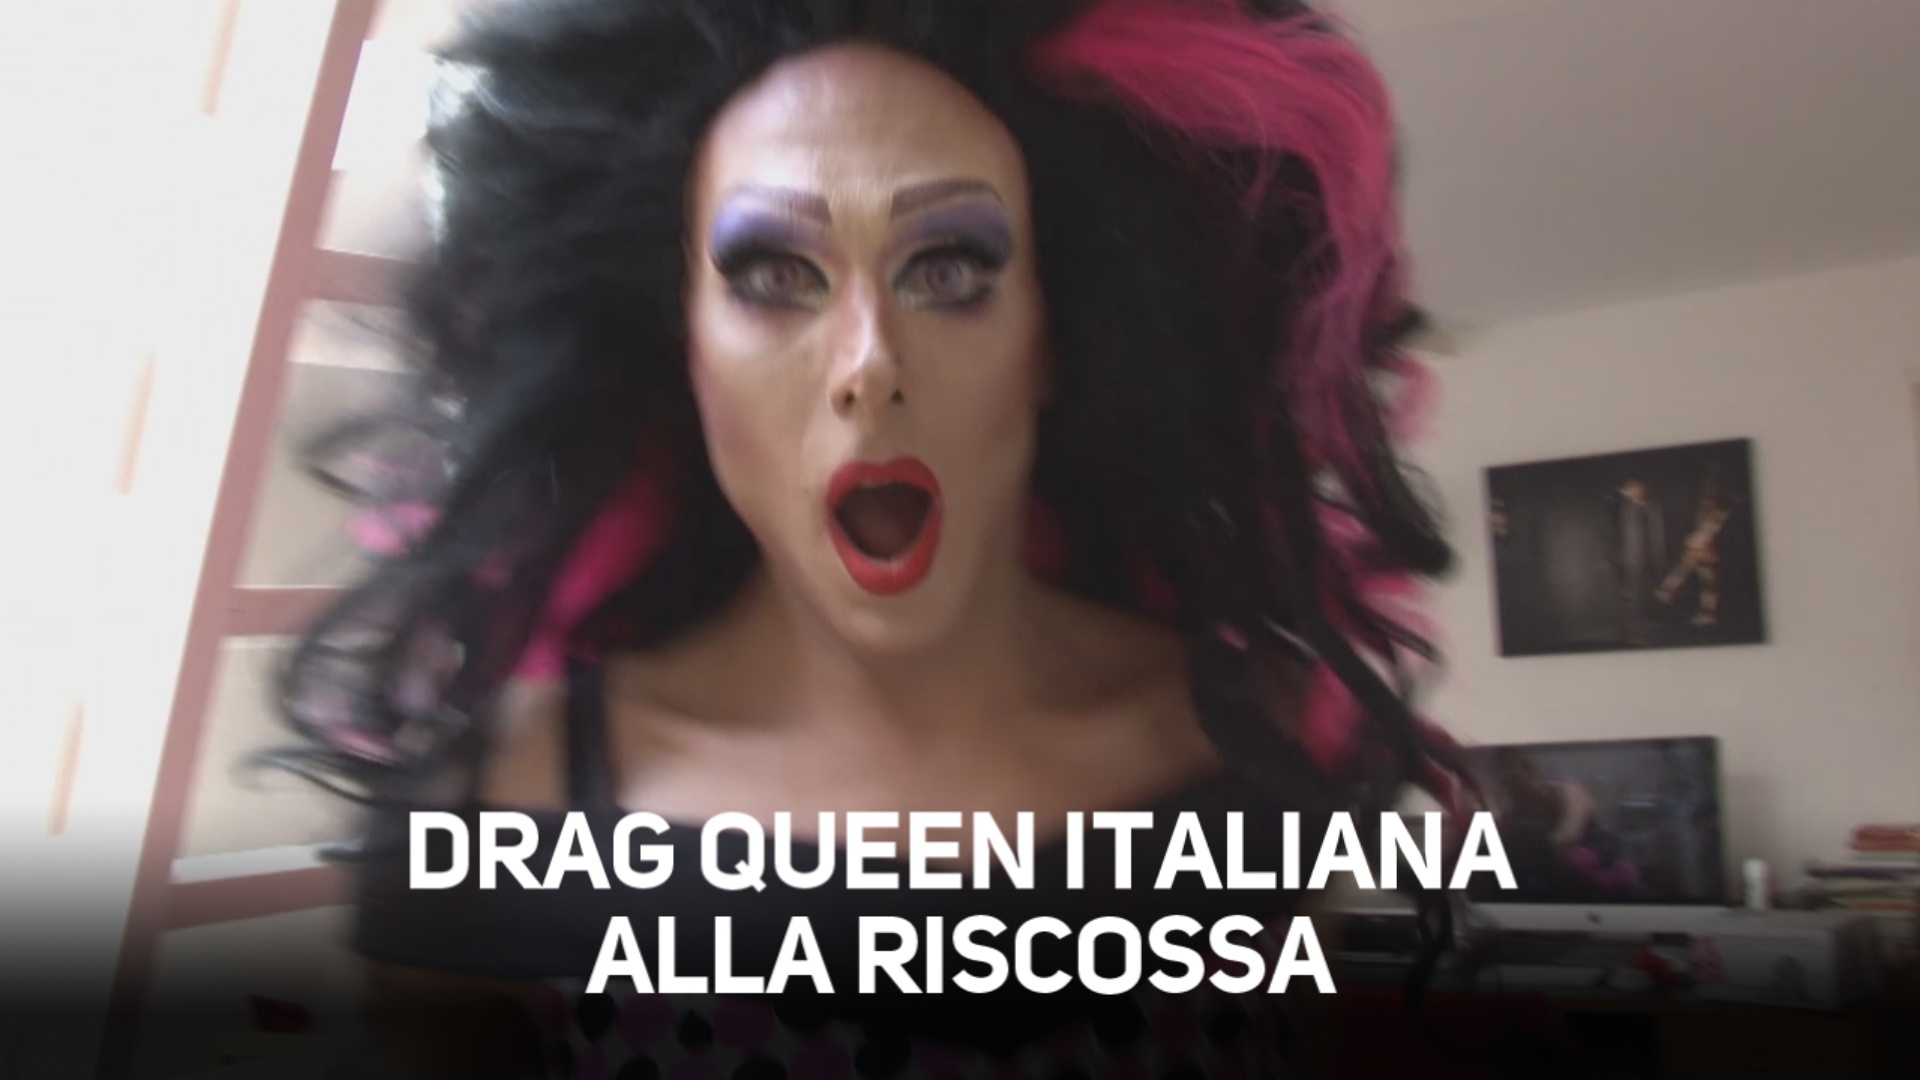 La regina delle drag queen di Amsterdam e' italiana